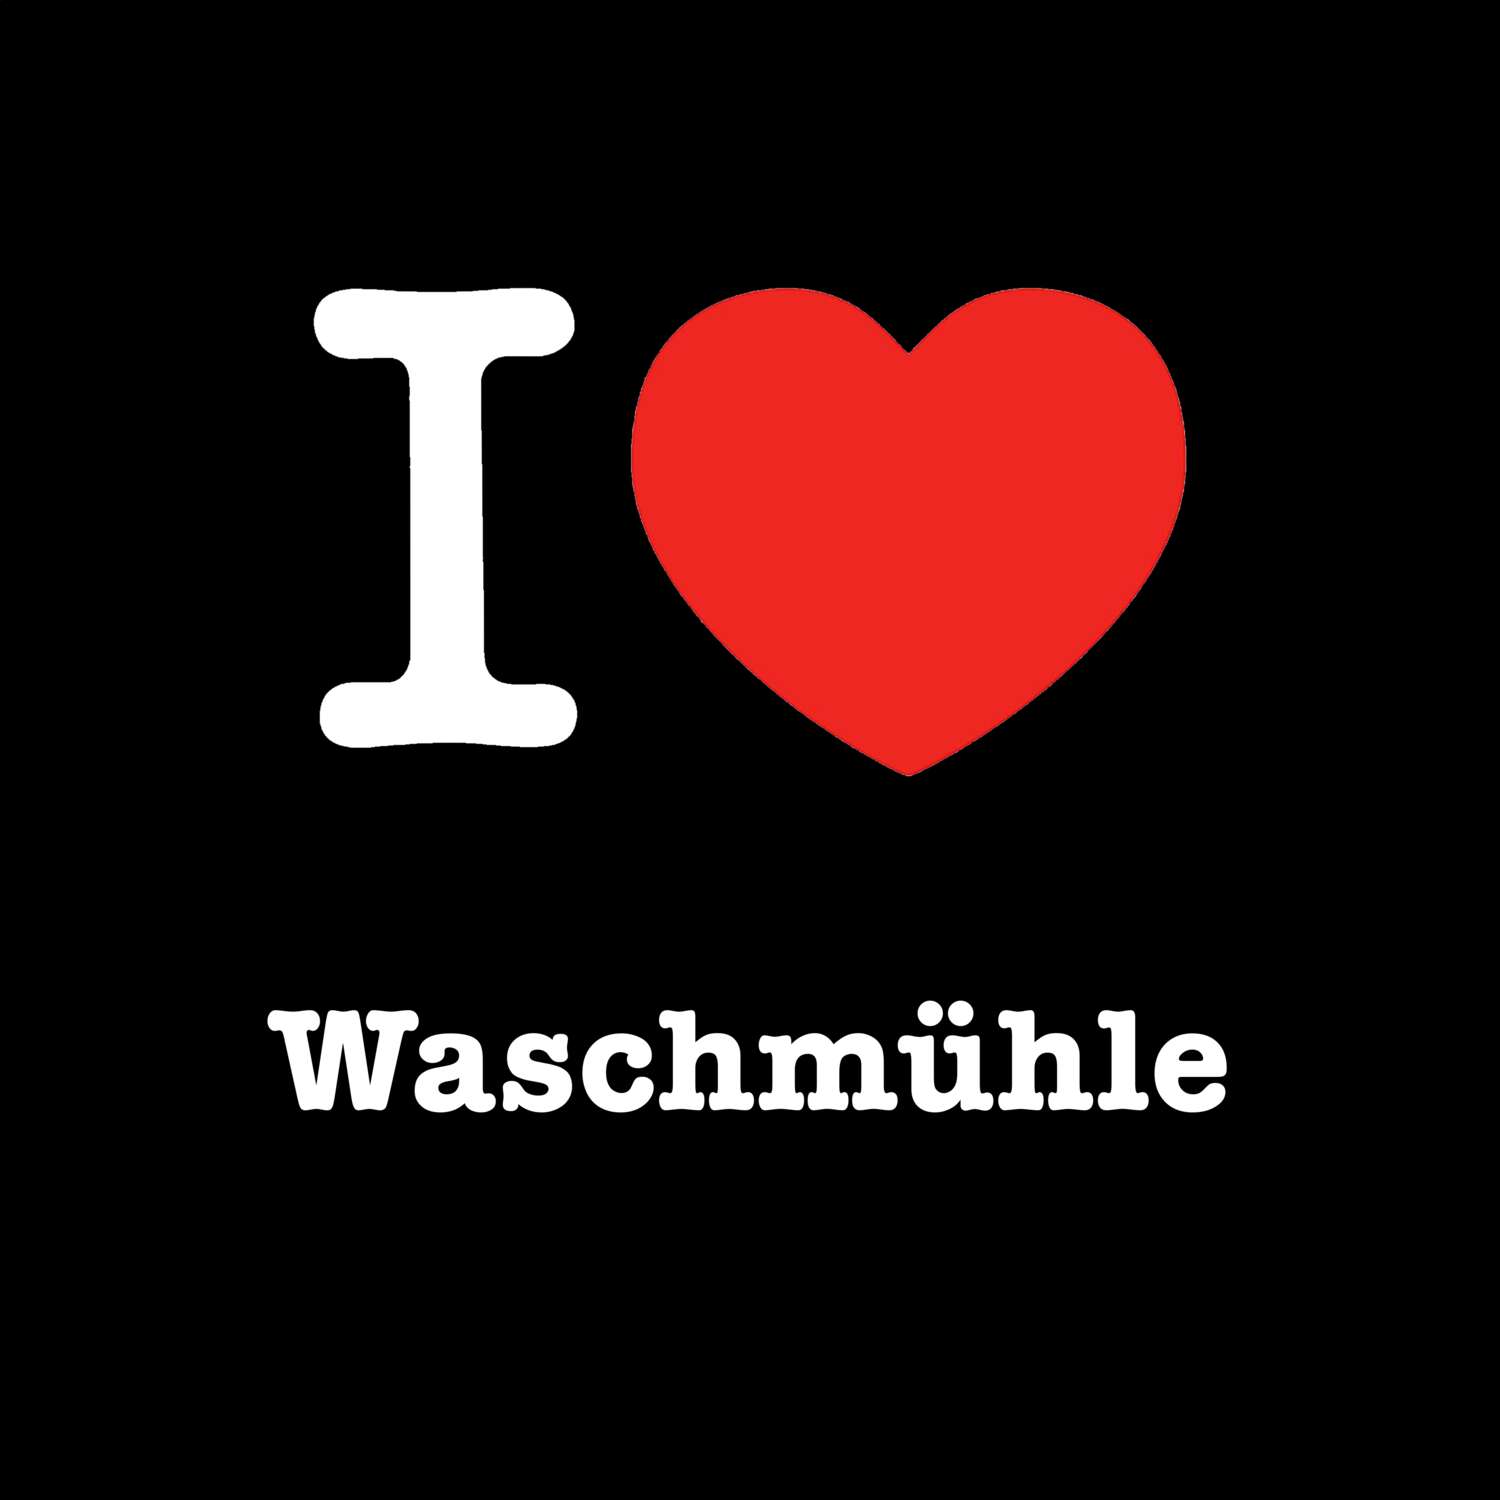 Waschmühle T-Shirt »I love«